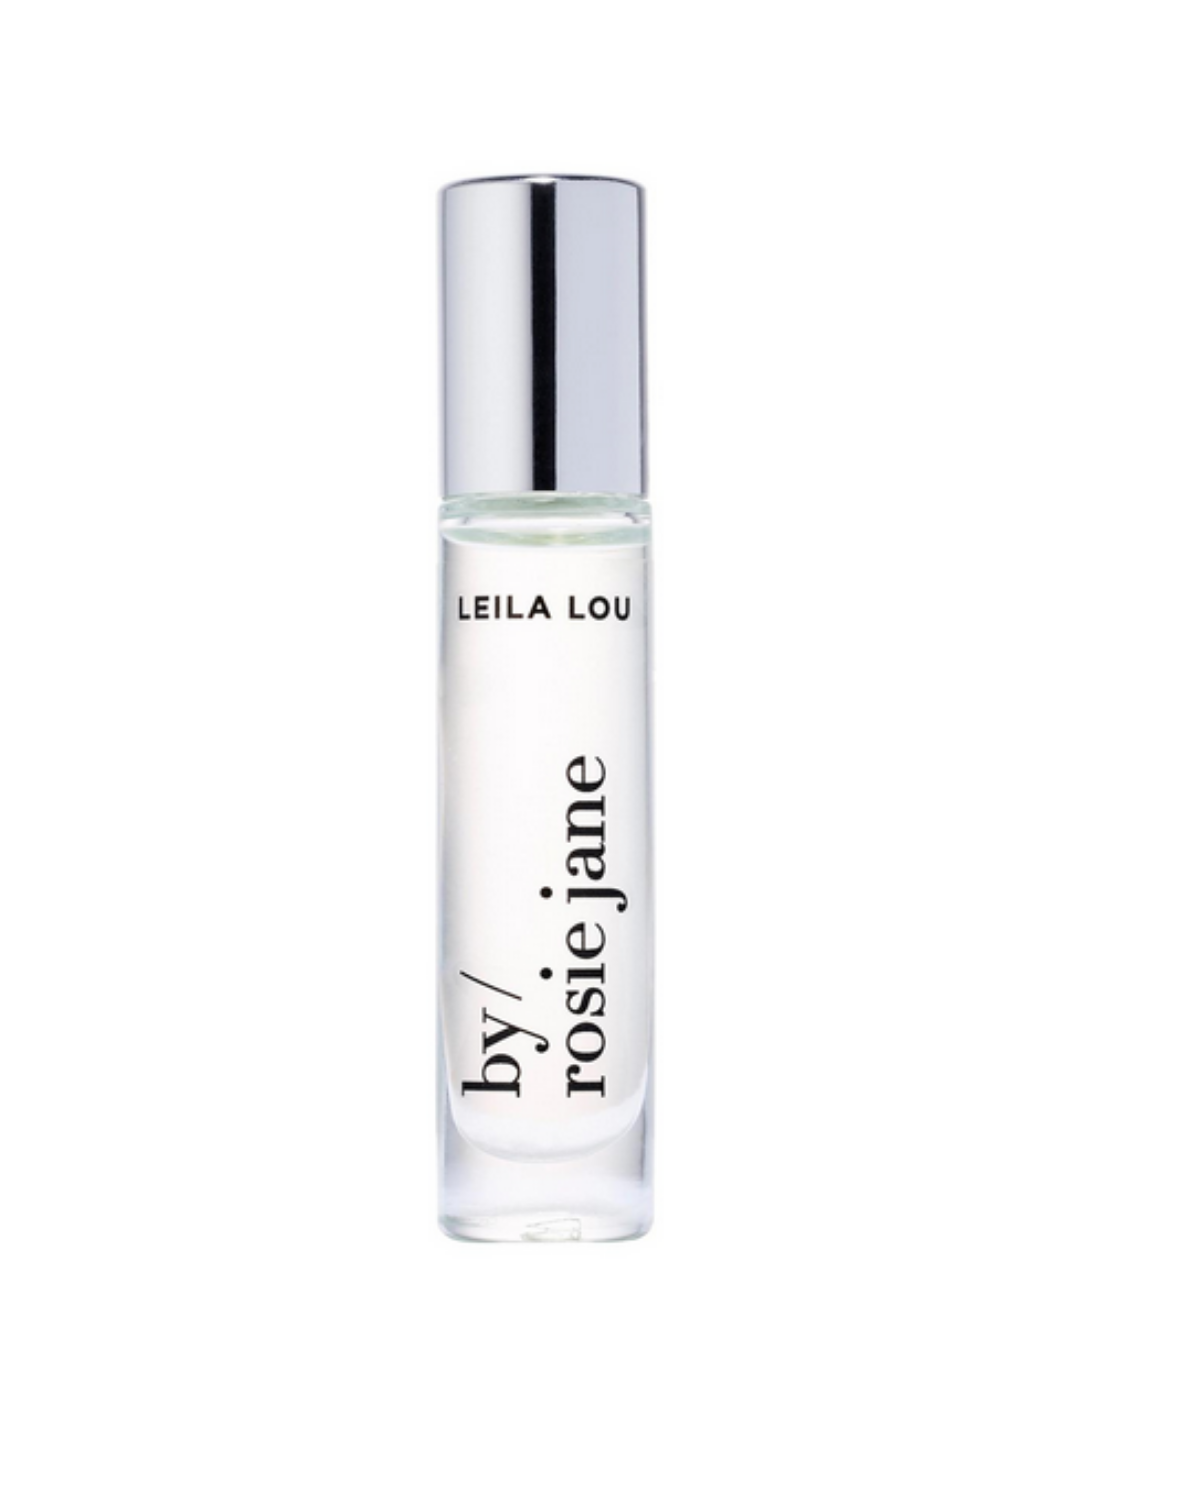 Leila Lou Perfume Oil by Rosie Jane